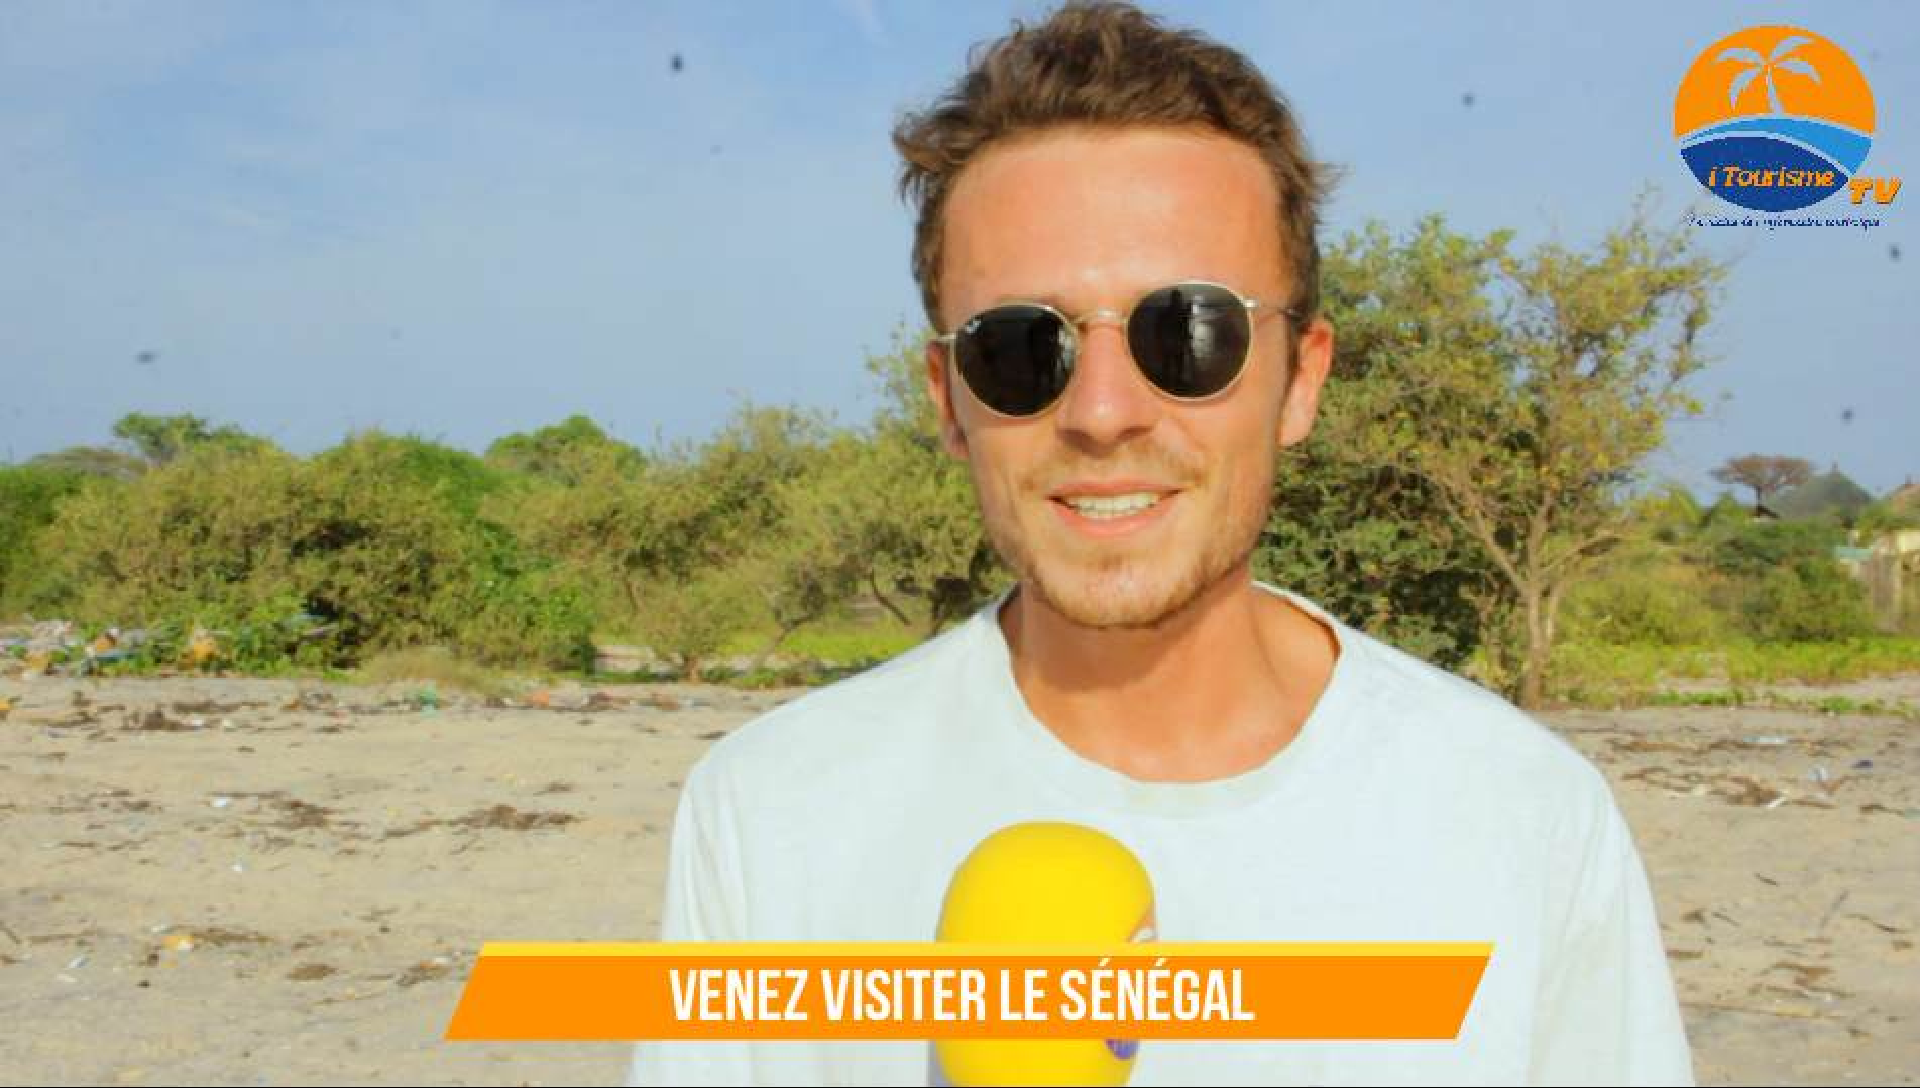 Le Sénégal, un pays à découvrir dans sa vie selon un jeune étudiant français en séjour dans le pays de la téranga.